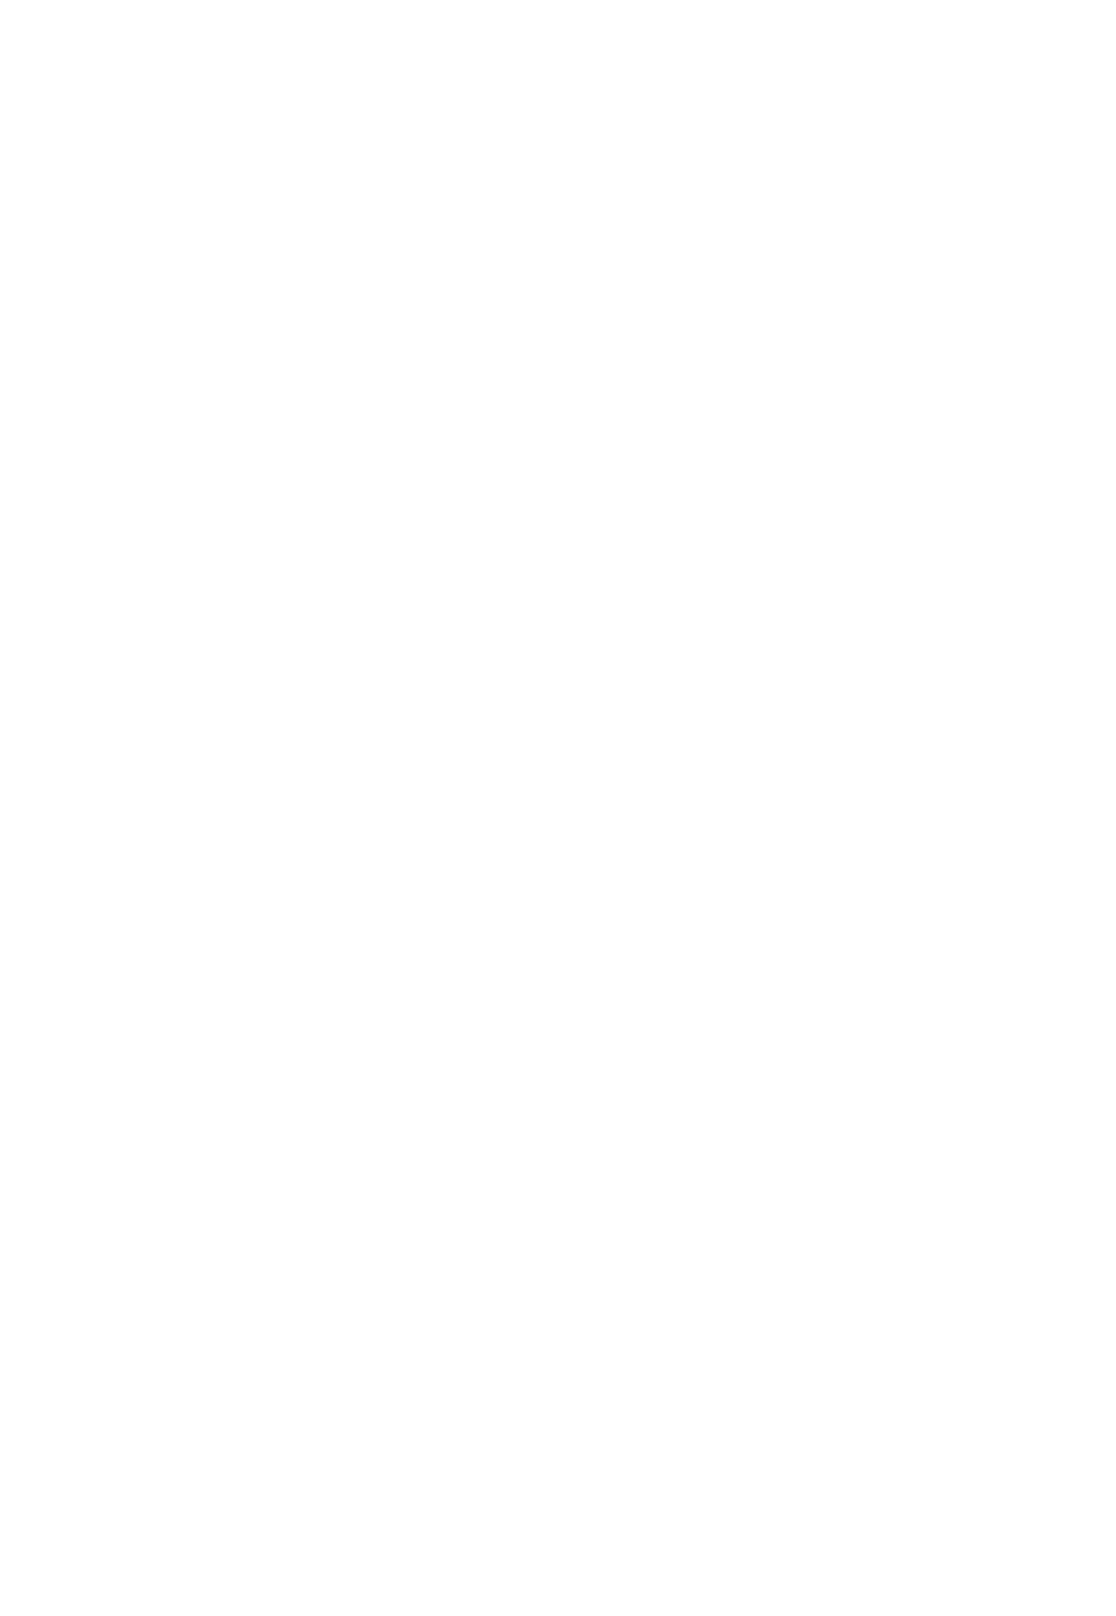 FinWise Bancorp logo pour fonds sombres (PNG transparent)